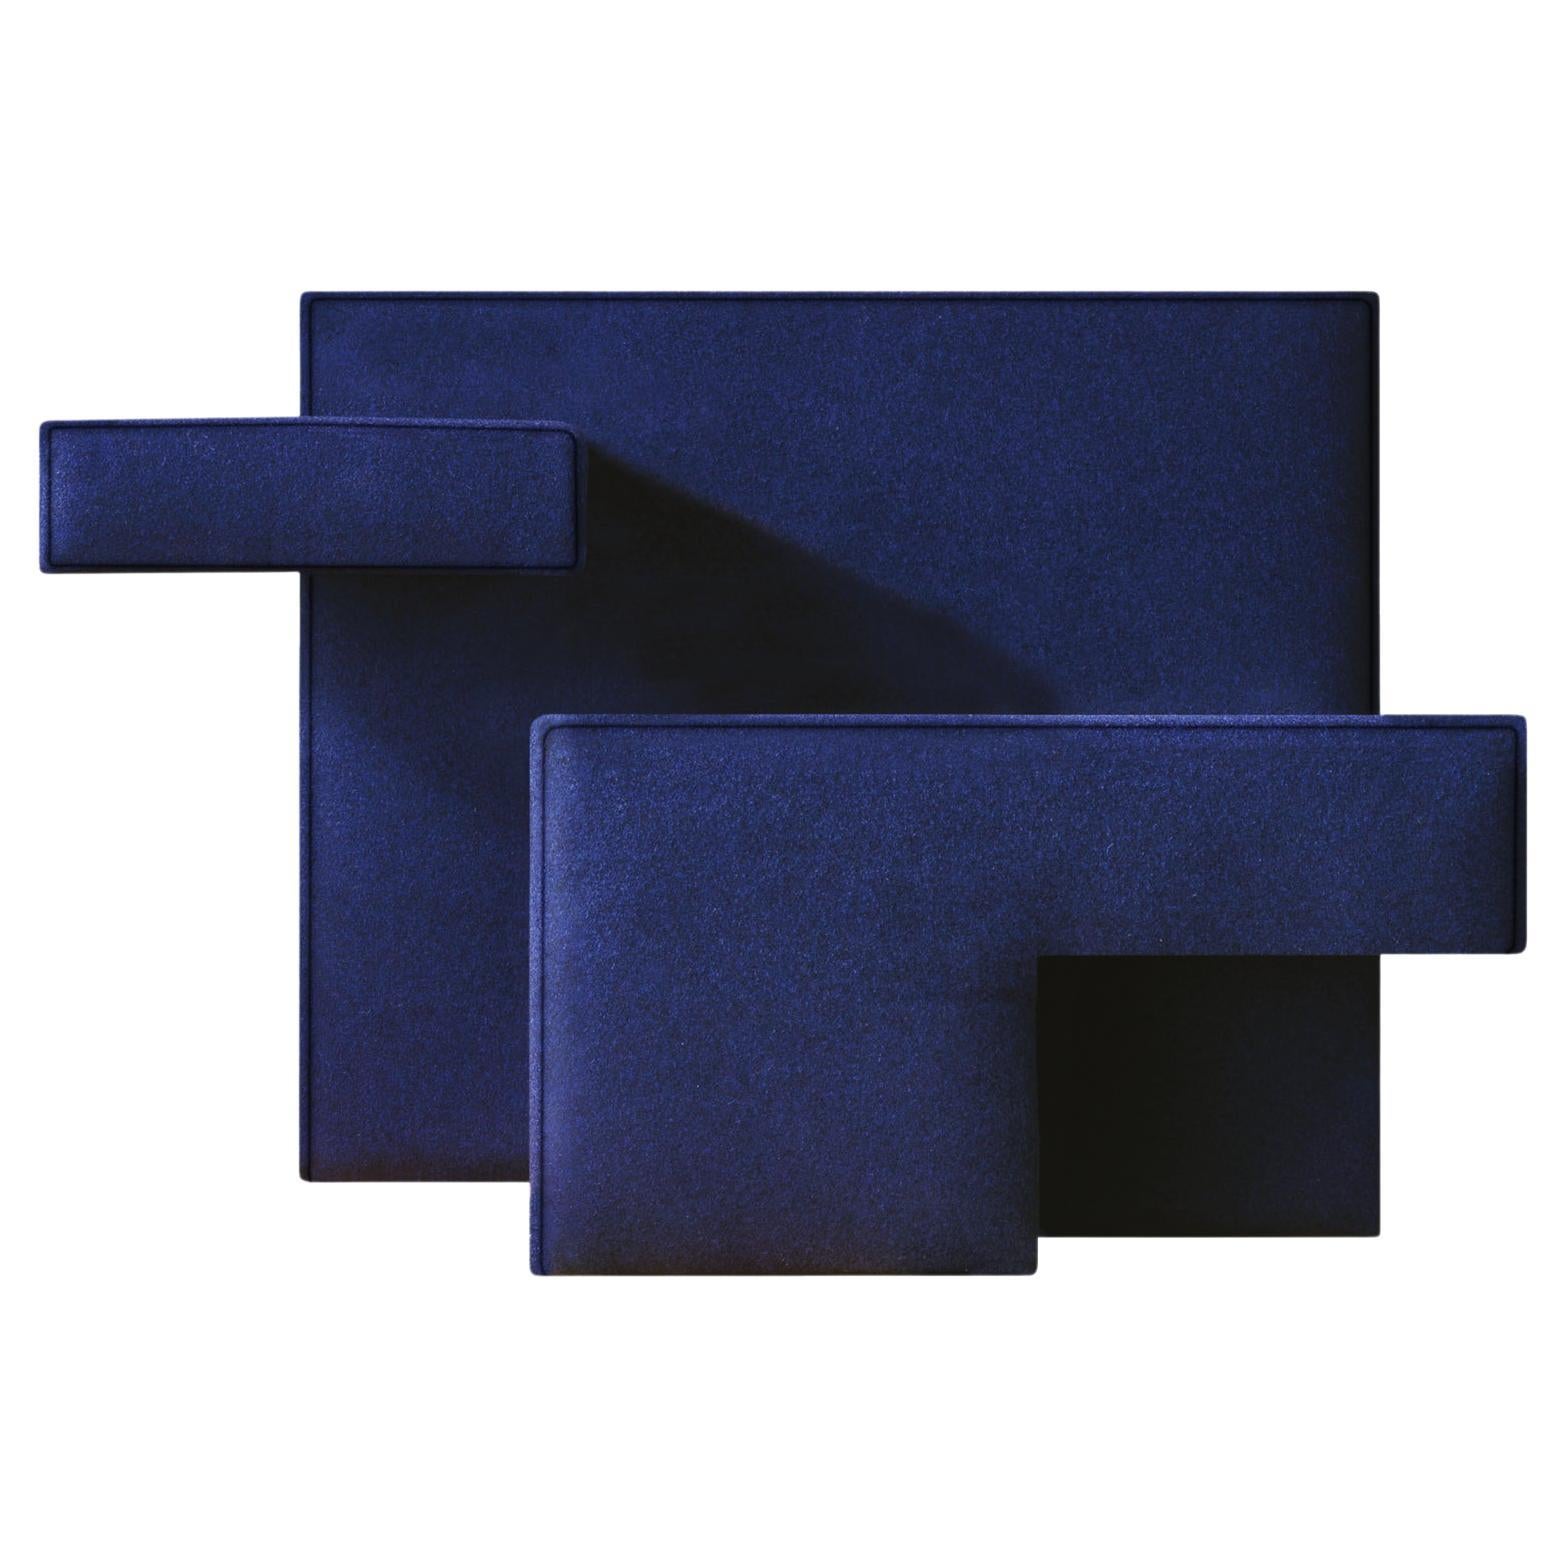 Fauteuil primitif bleu, conçu par Studio Nucleo, fabriqué en Italie